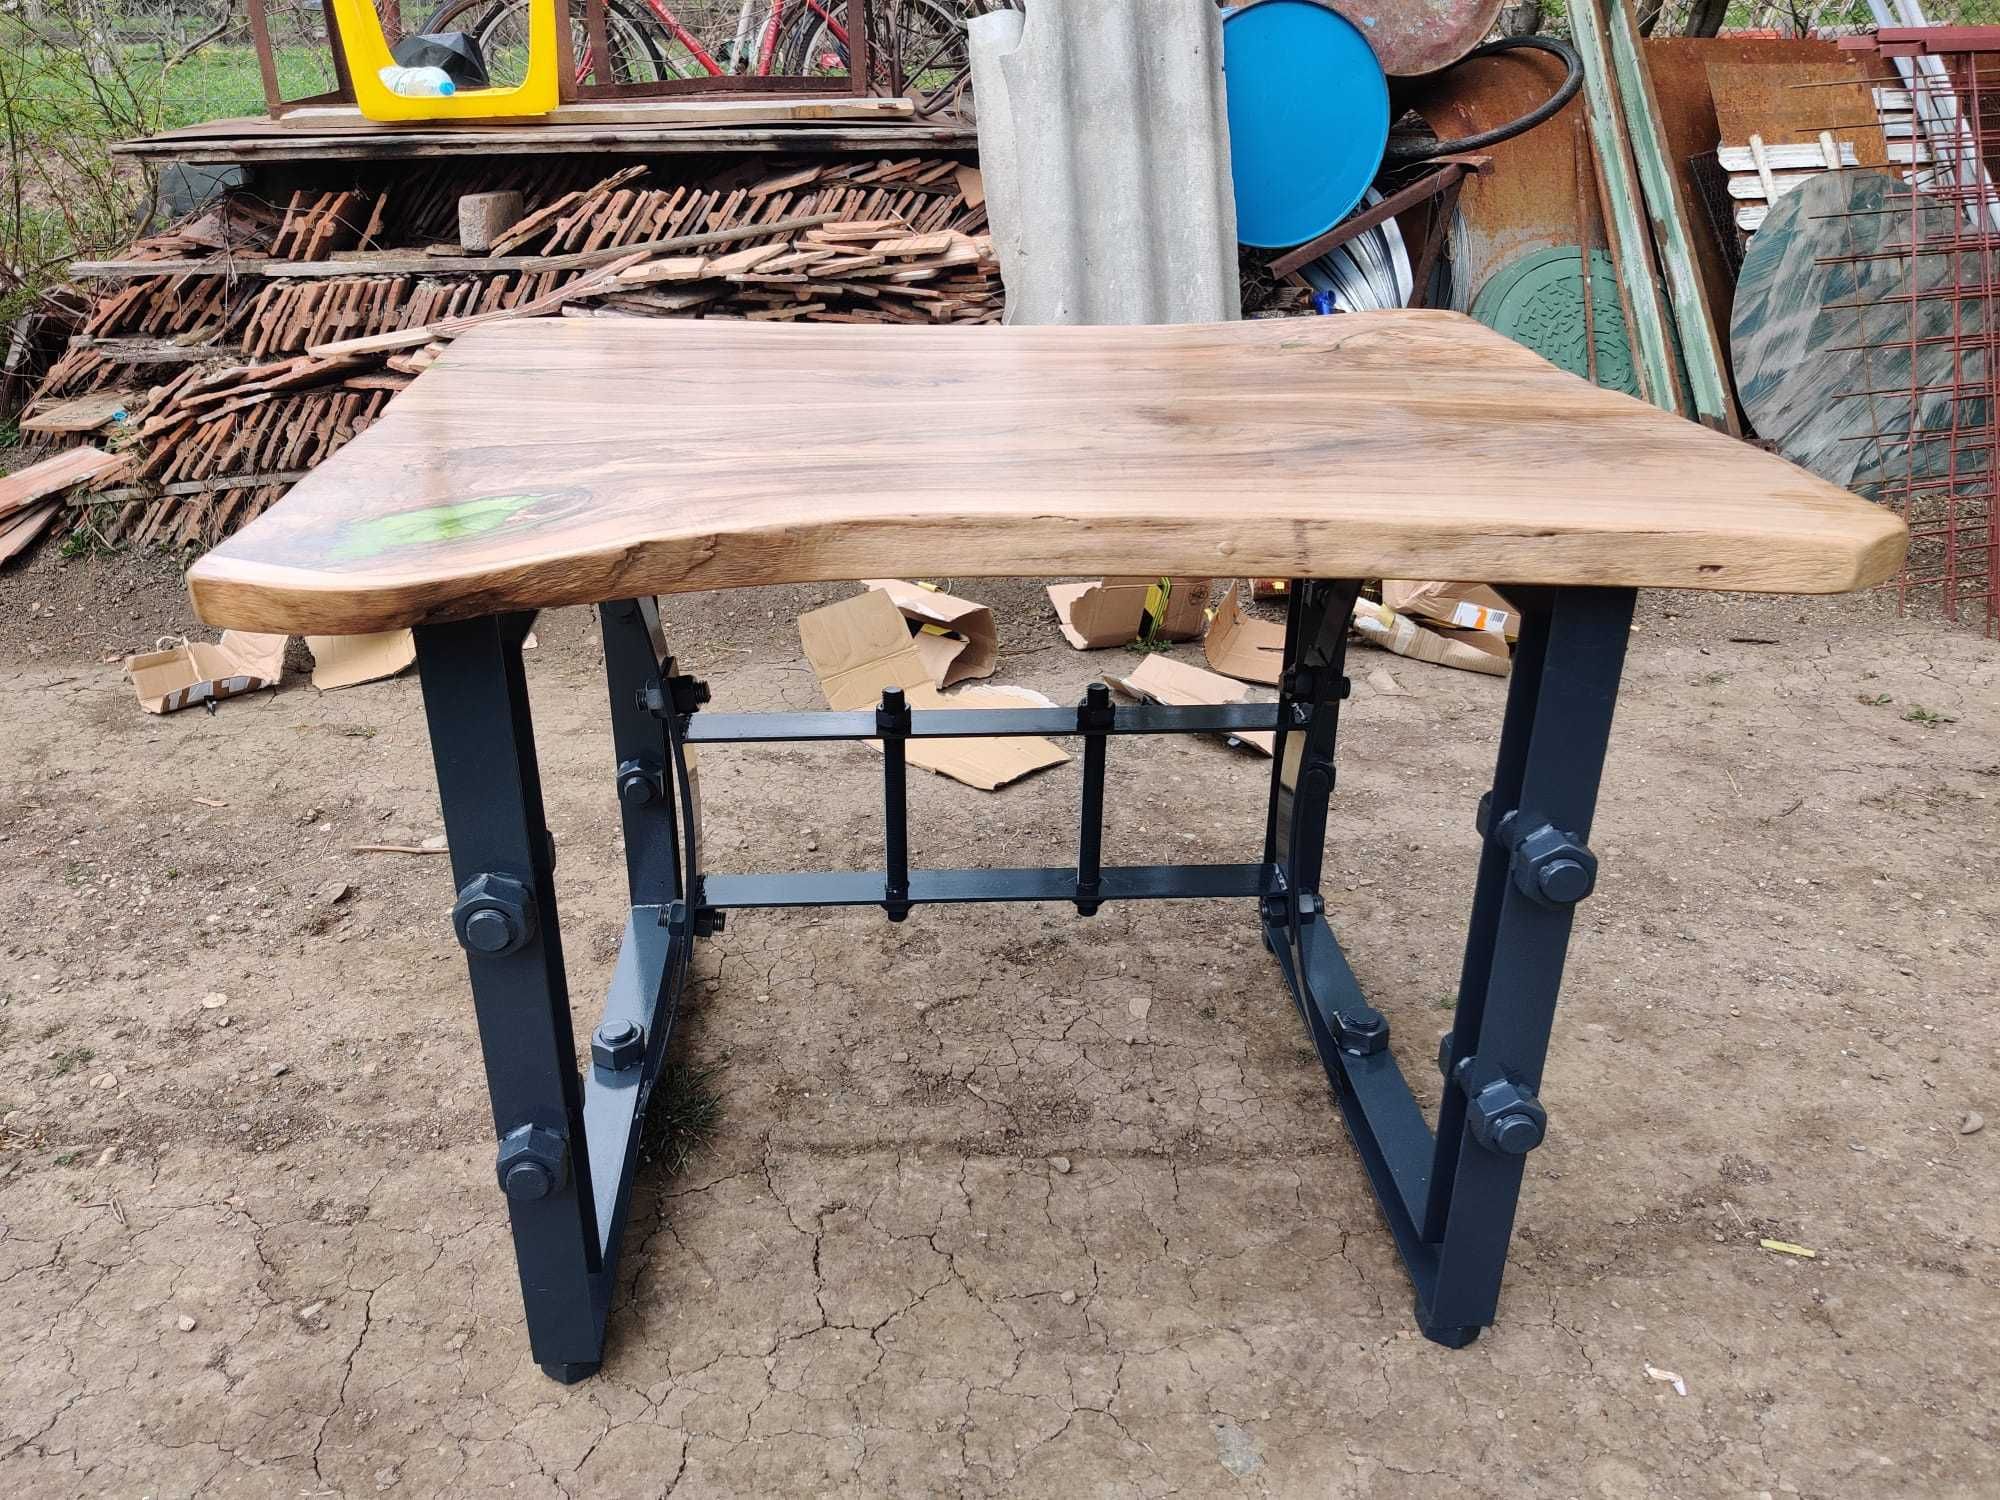 Vând masă din lemn de nuc cu rășină epoxidică și picioare metalice.